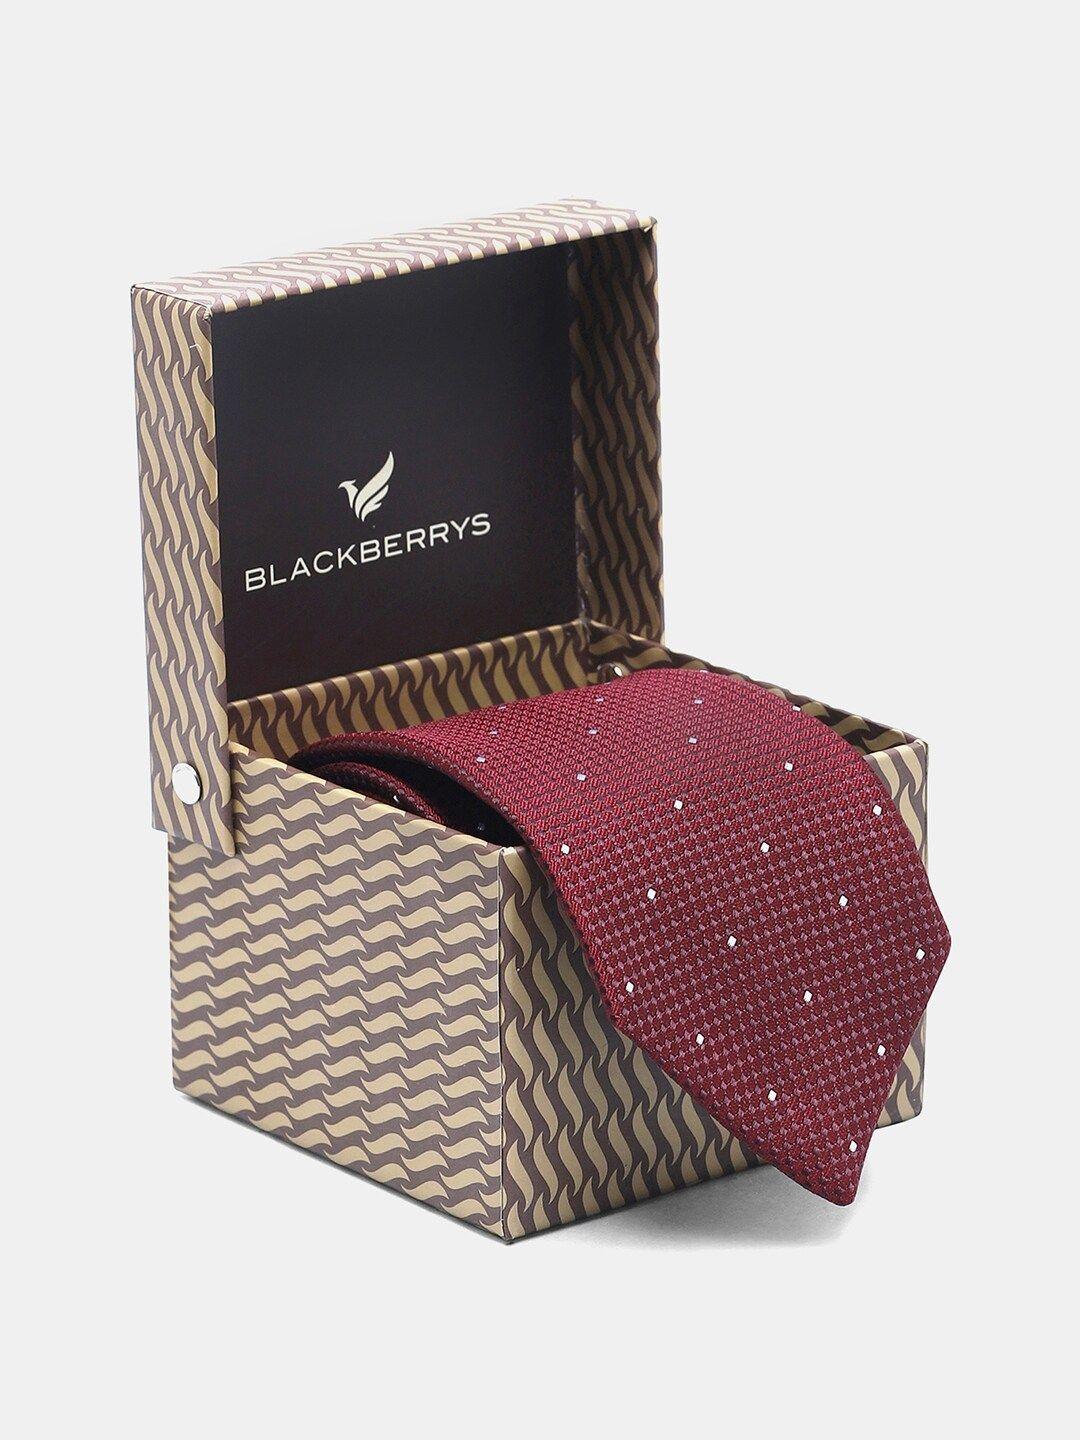 blackberrys woven design silk skinny tie